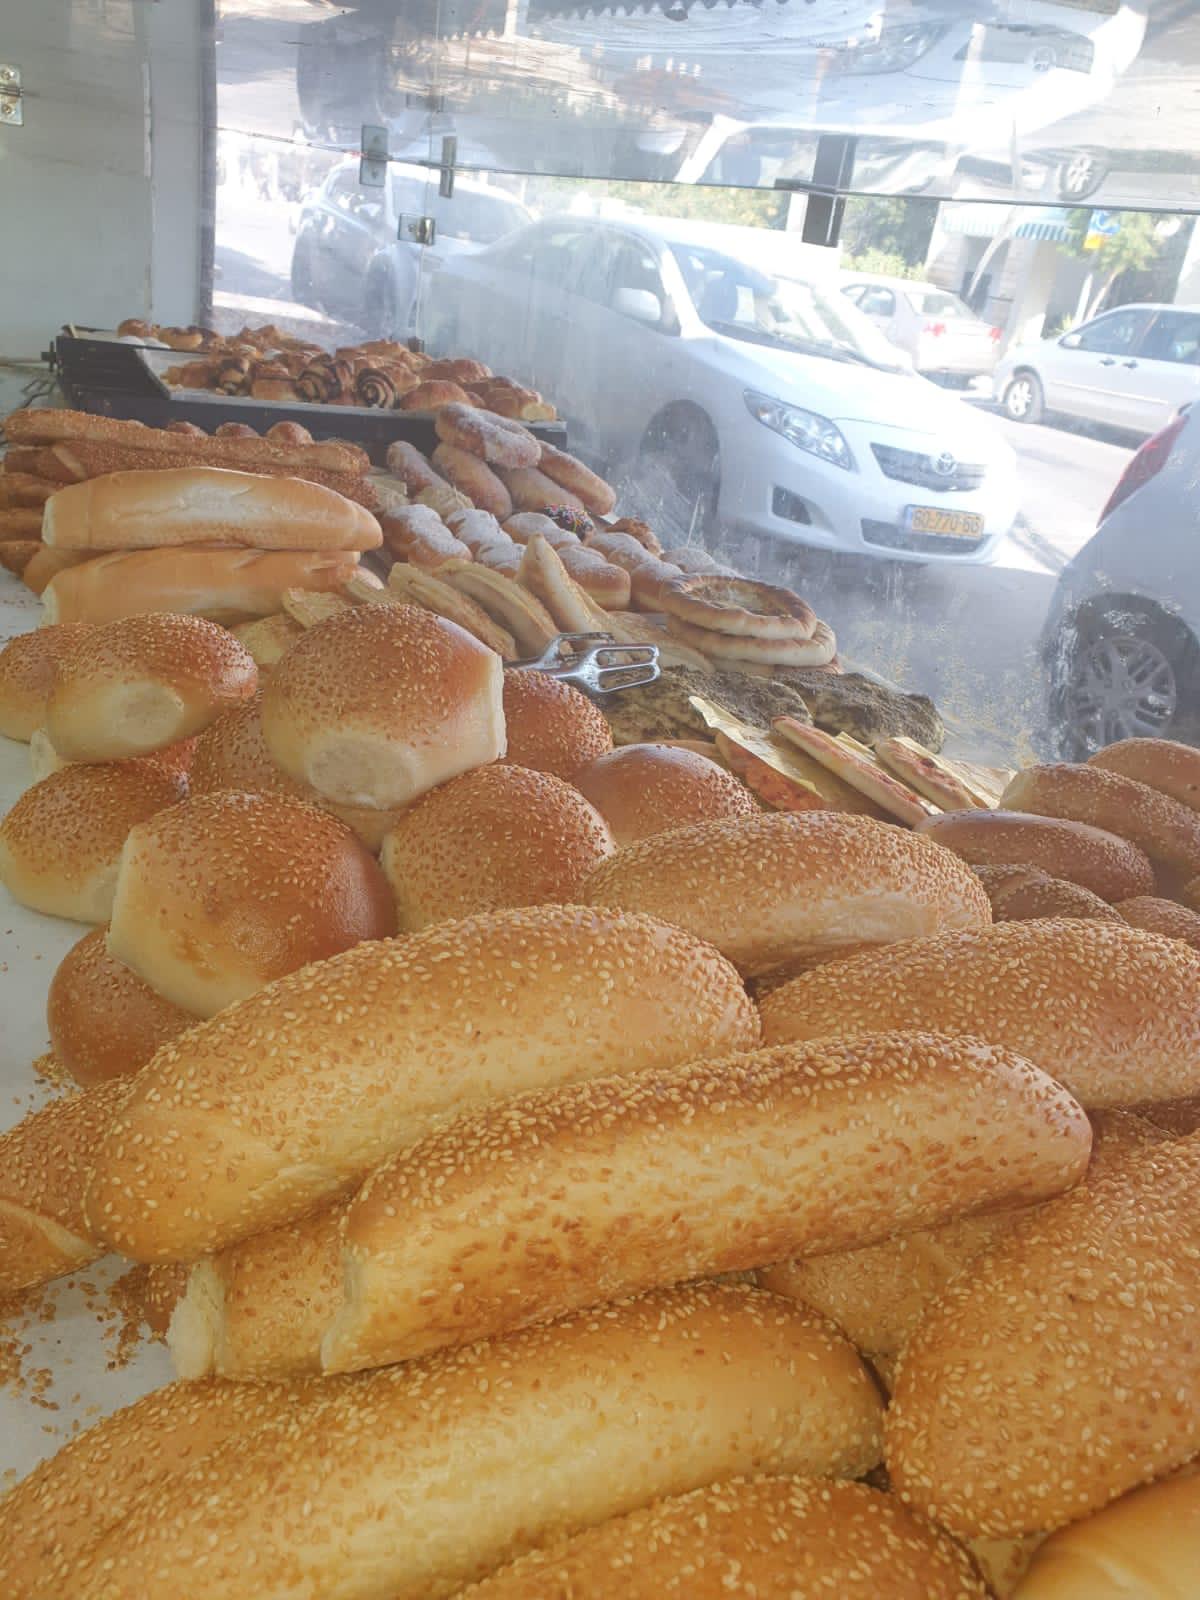   مخبز اخوان كحيل بيافا لأجود أنواع الخبز والمعجنات 